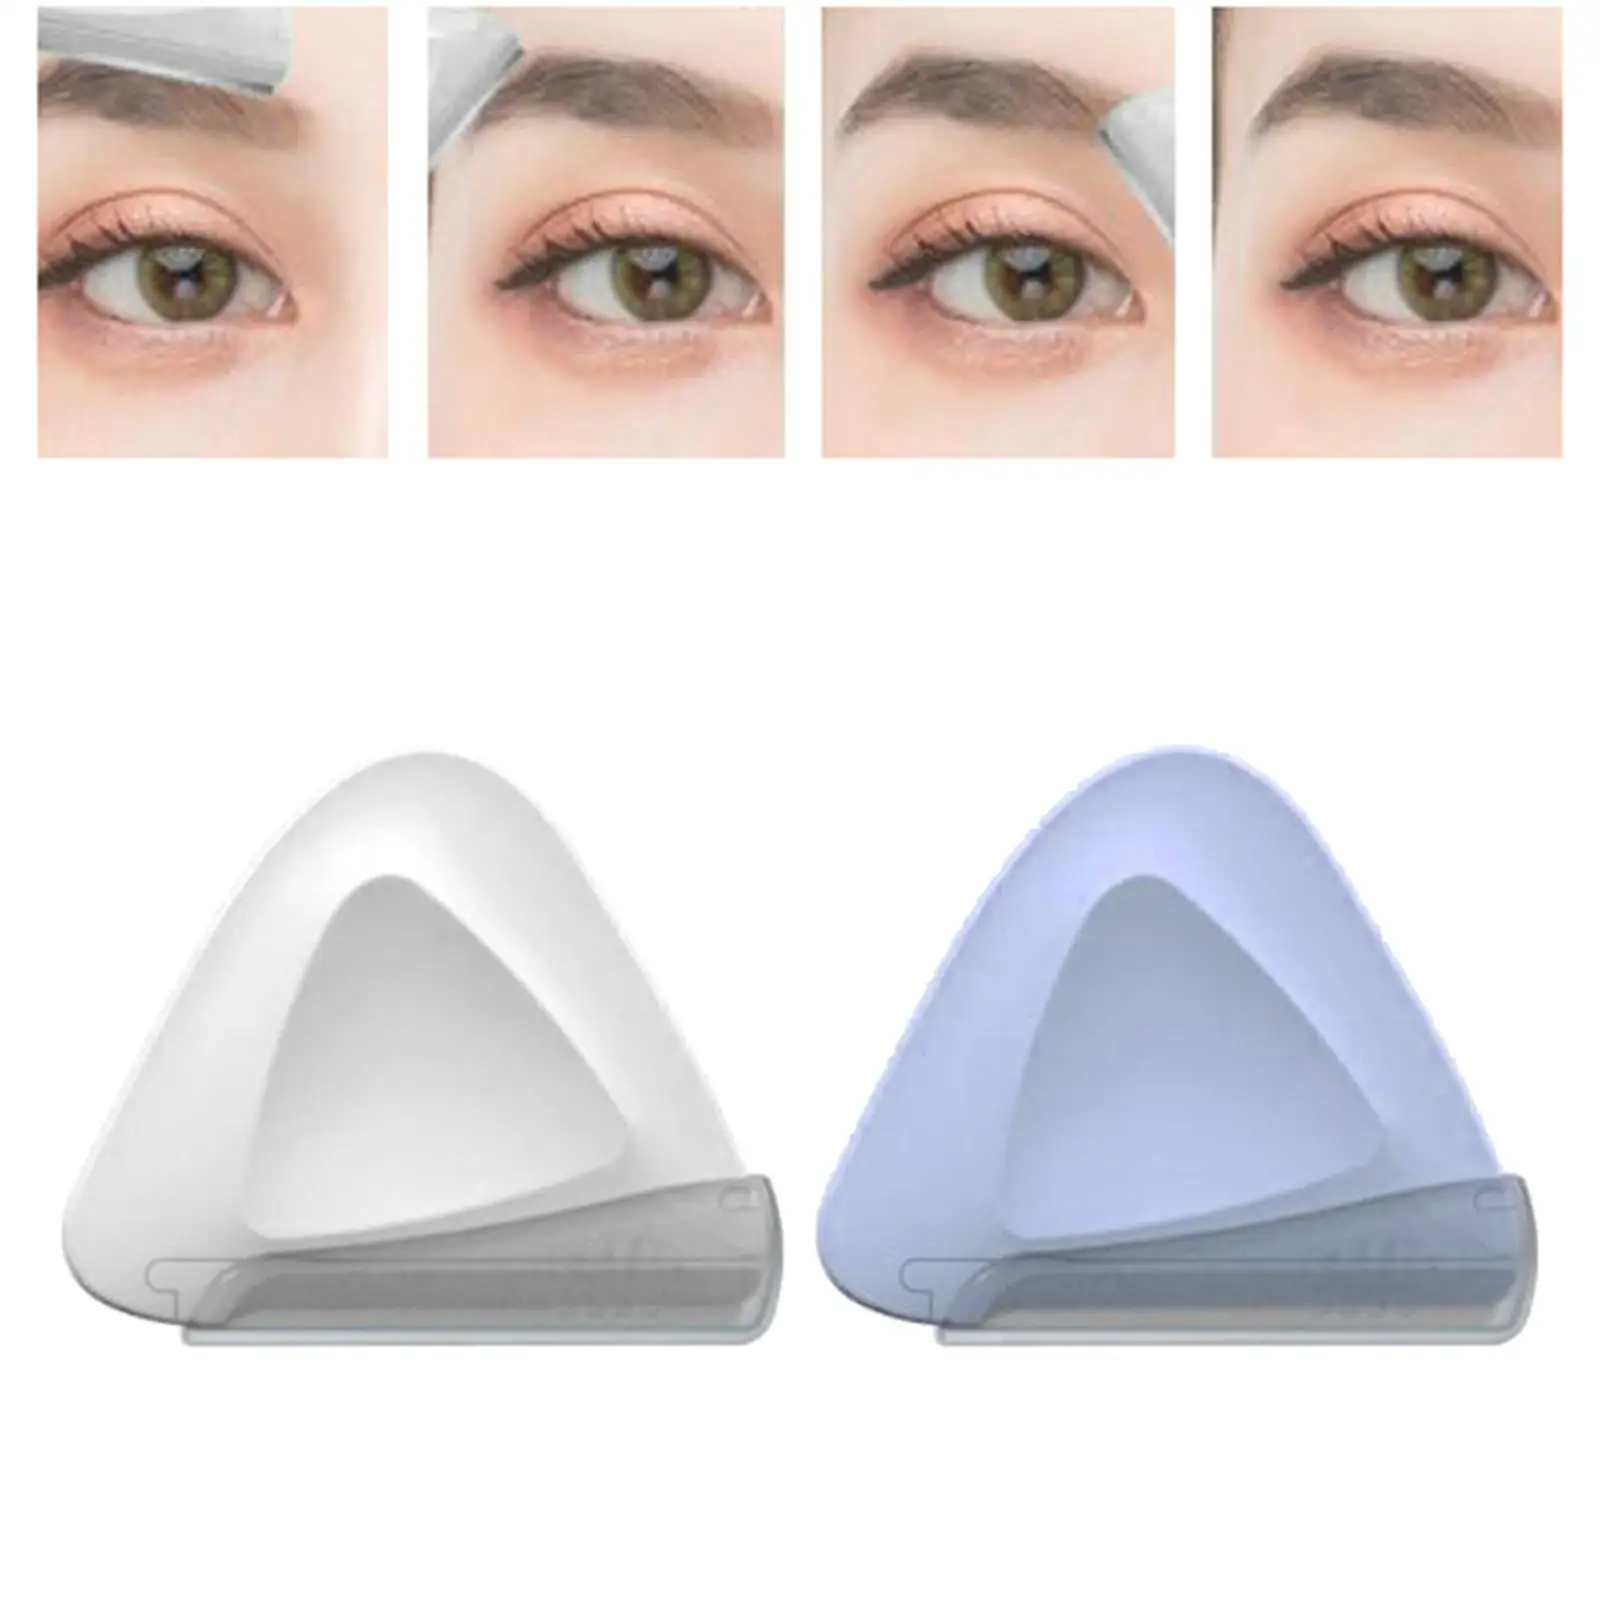 2 Pieces Eyebrow Portable Beauty Tool Facial for Novices Women